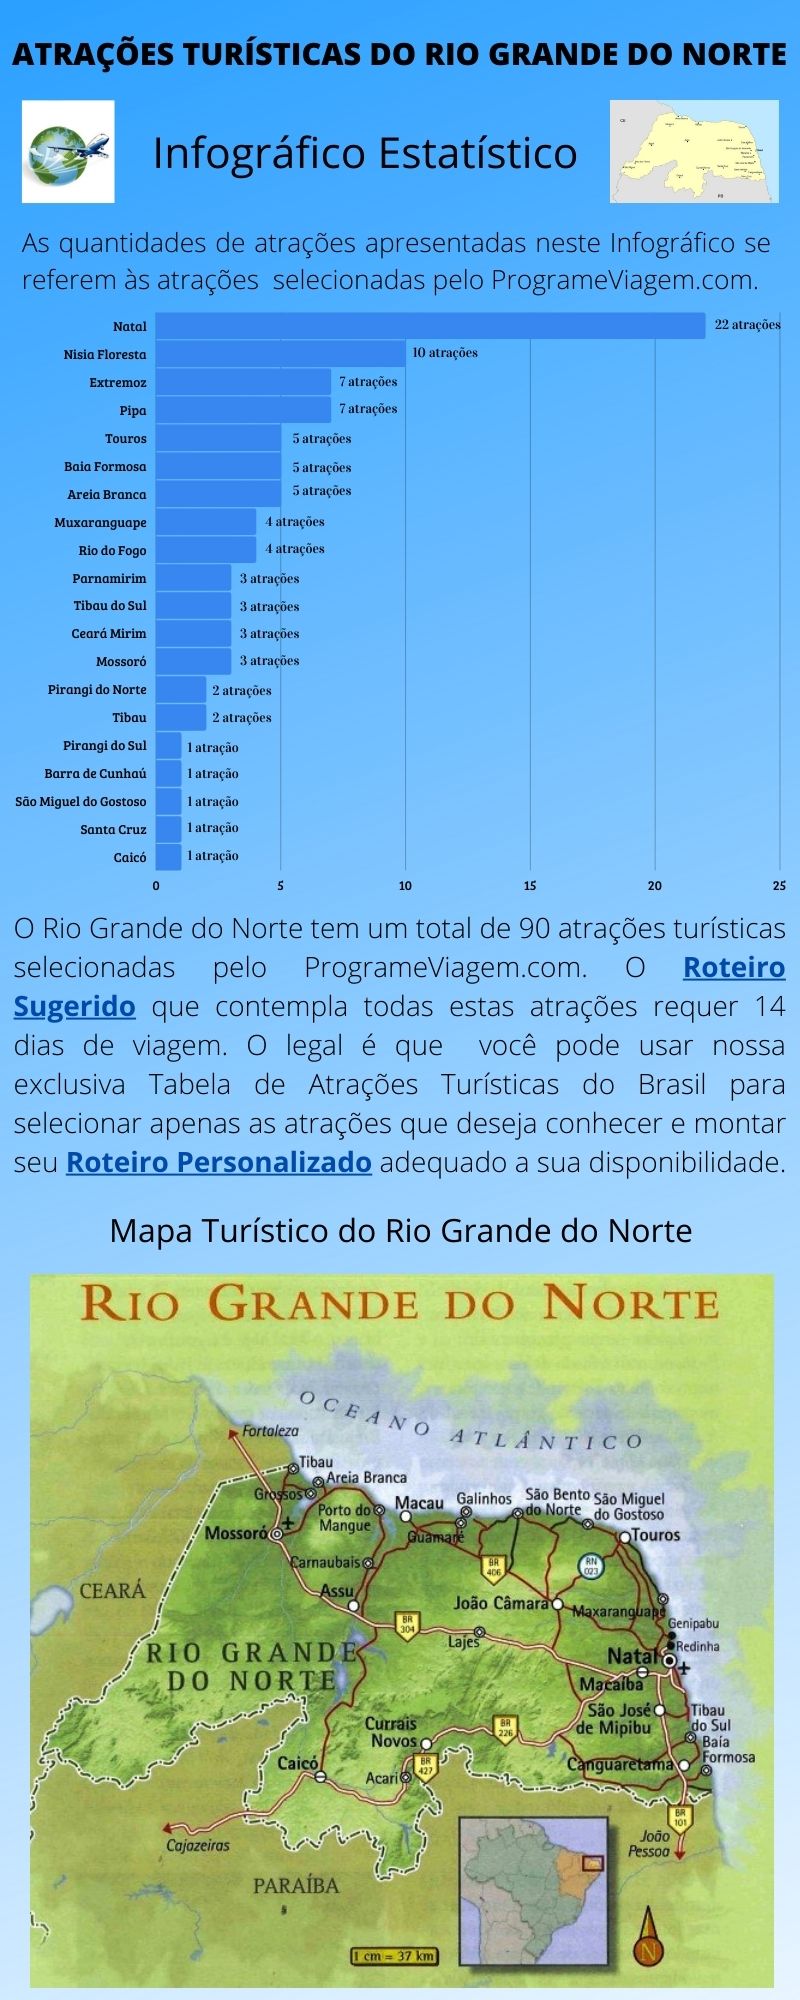 Infográfico Atrações Turísticas do Rio Grande do Norte 1